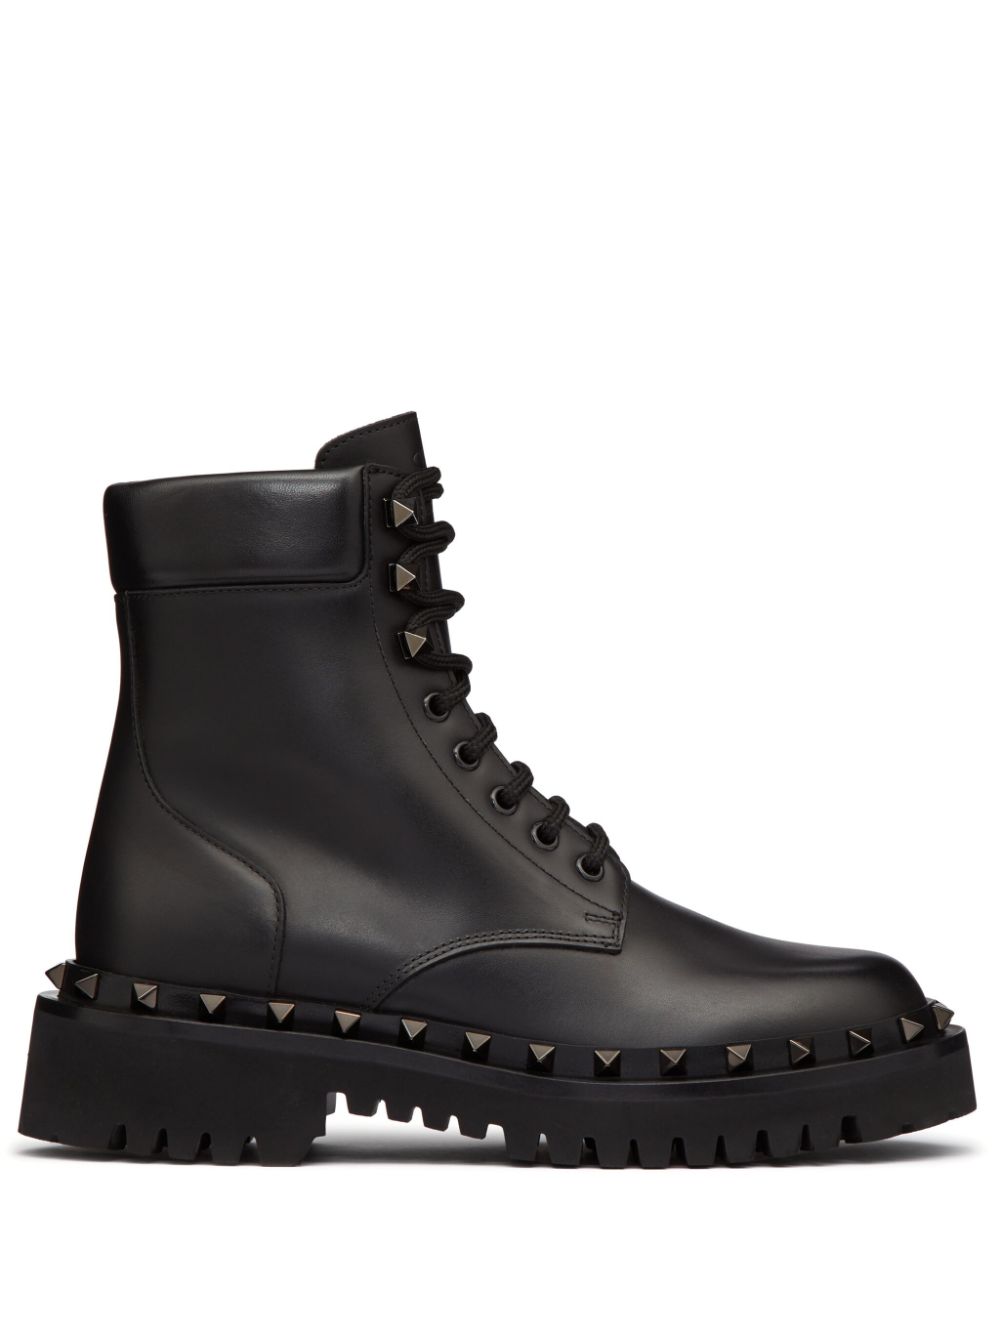 Valentino Garavani Rockstud 50mm leather ankle boots - Black von Valentino Garavani